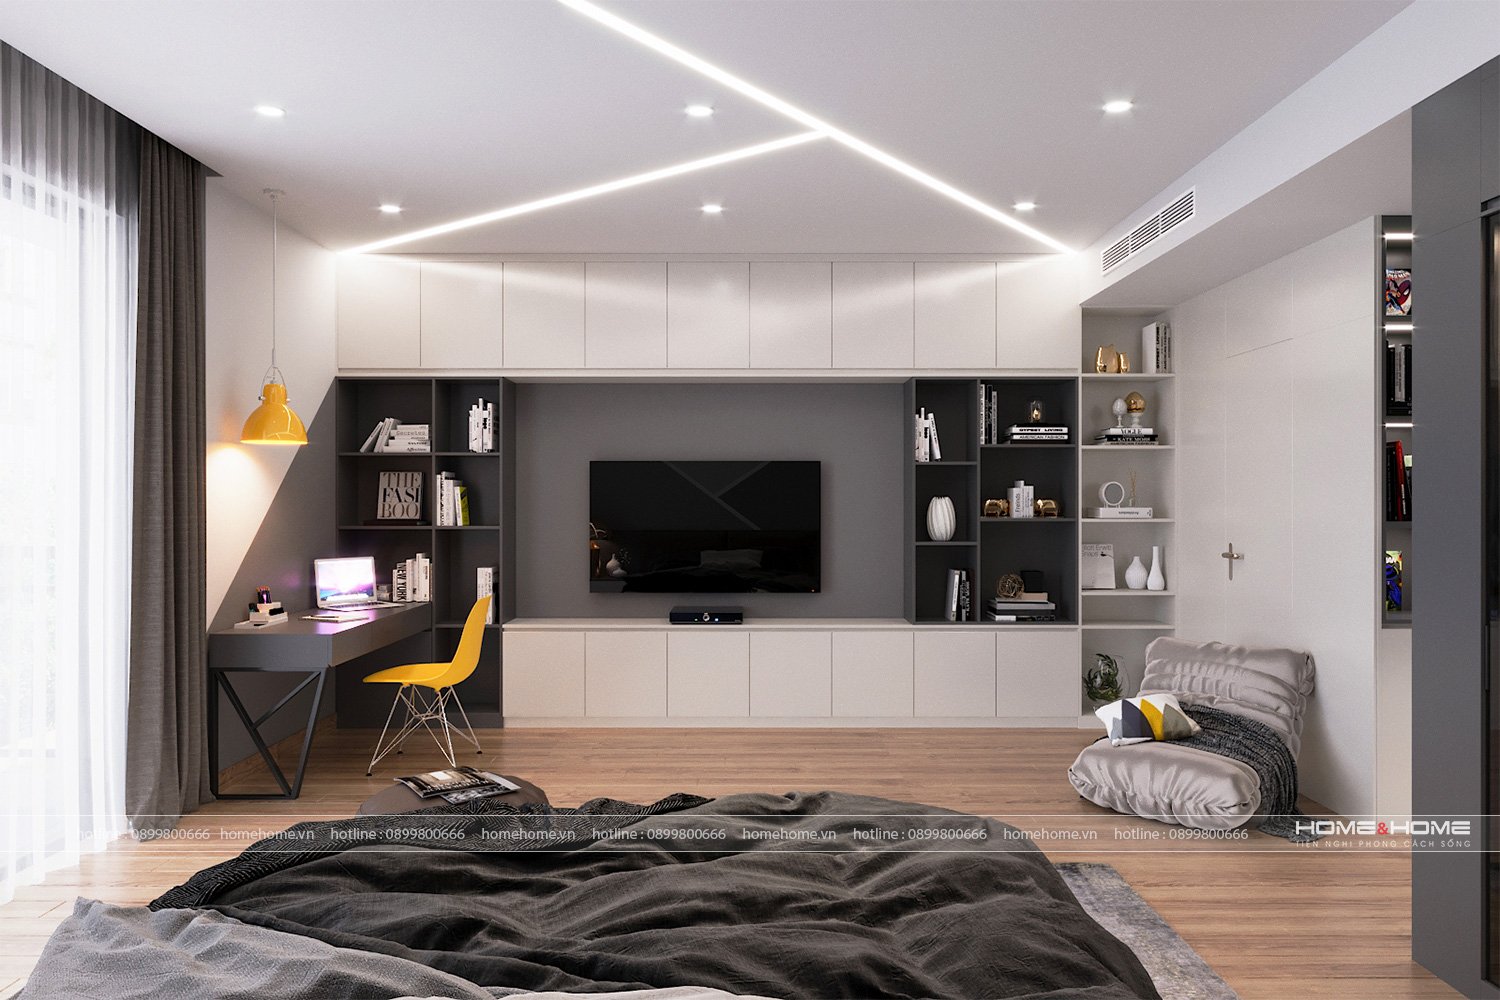 Lựa chọn kệ tivi phong cách hiện đại cho phòng khách - Home&Home